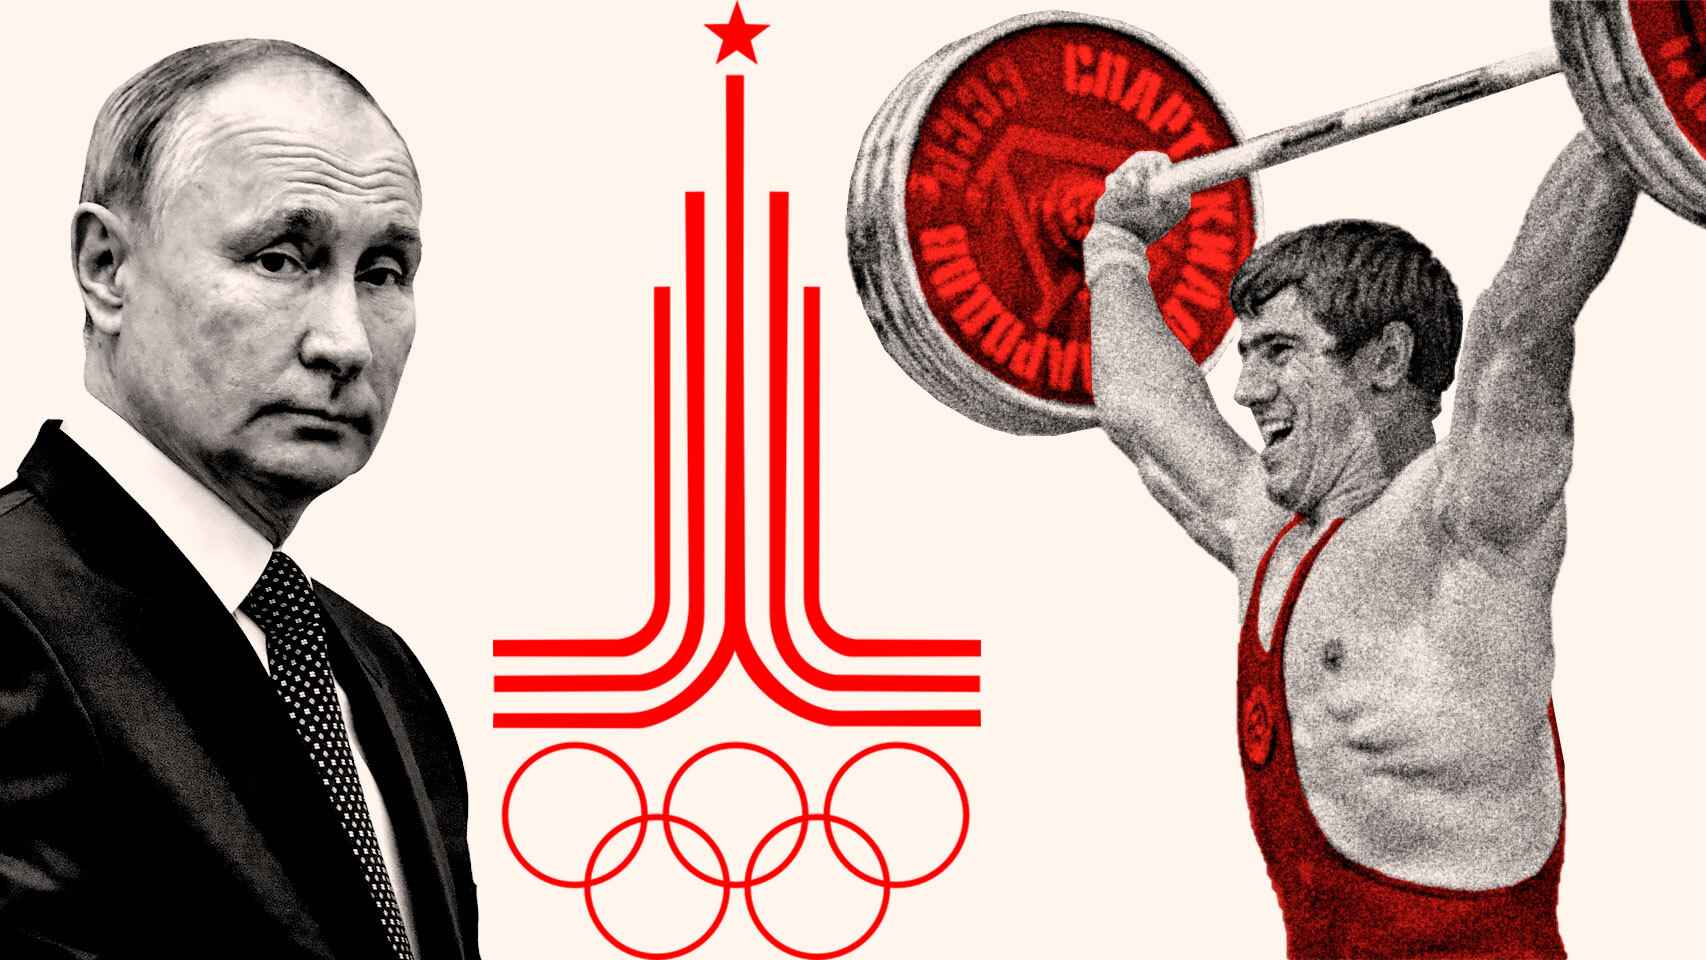 Vladimir Putin y los Juegos Olímpicos rusos